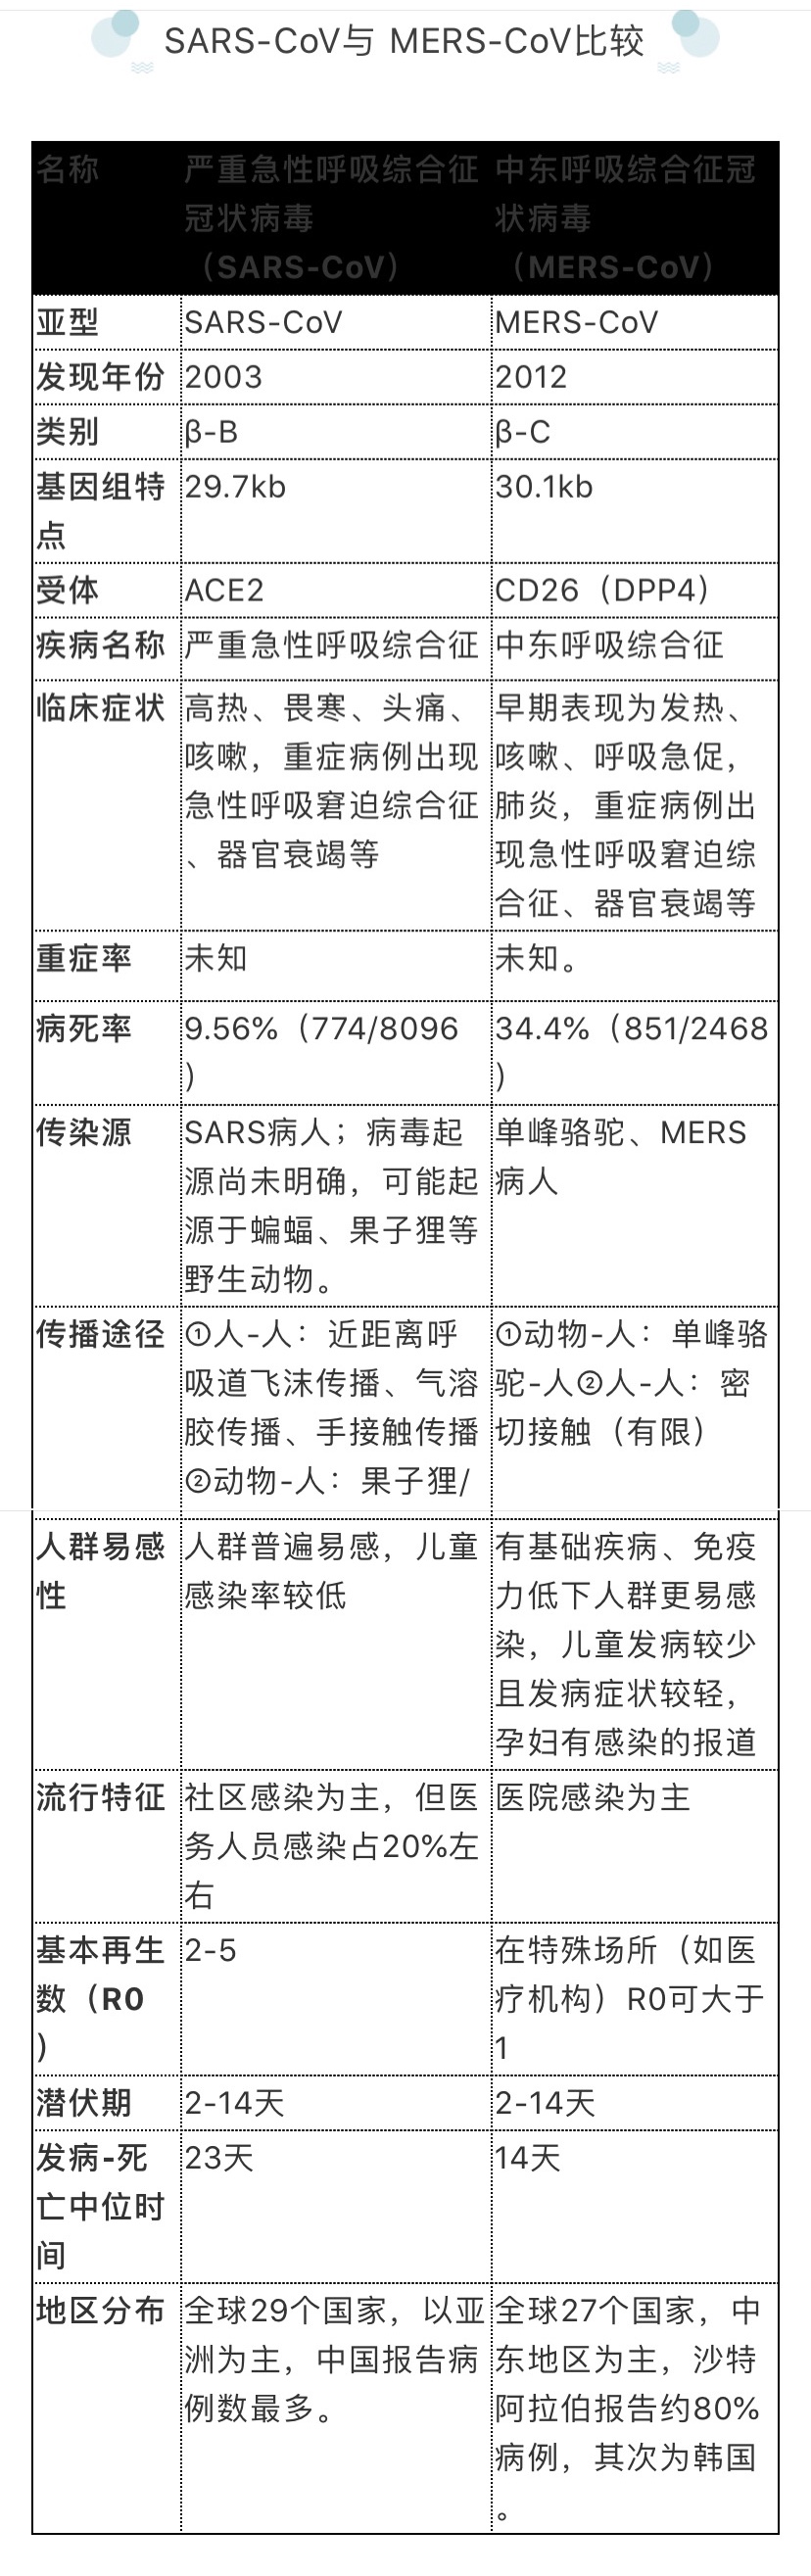 冠状病毒是什么 人感染后会怎样 中国疾控中心发文释疑 国内 新京报网